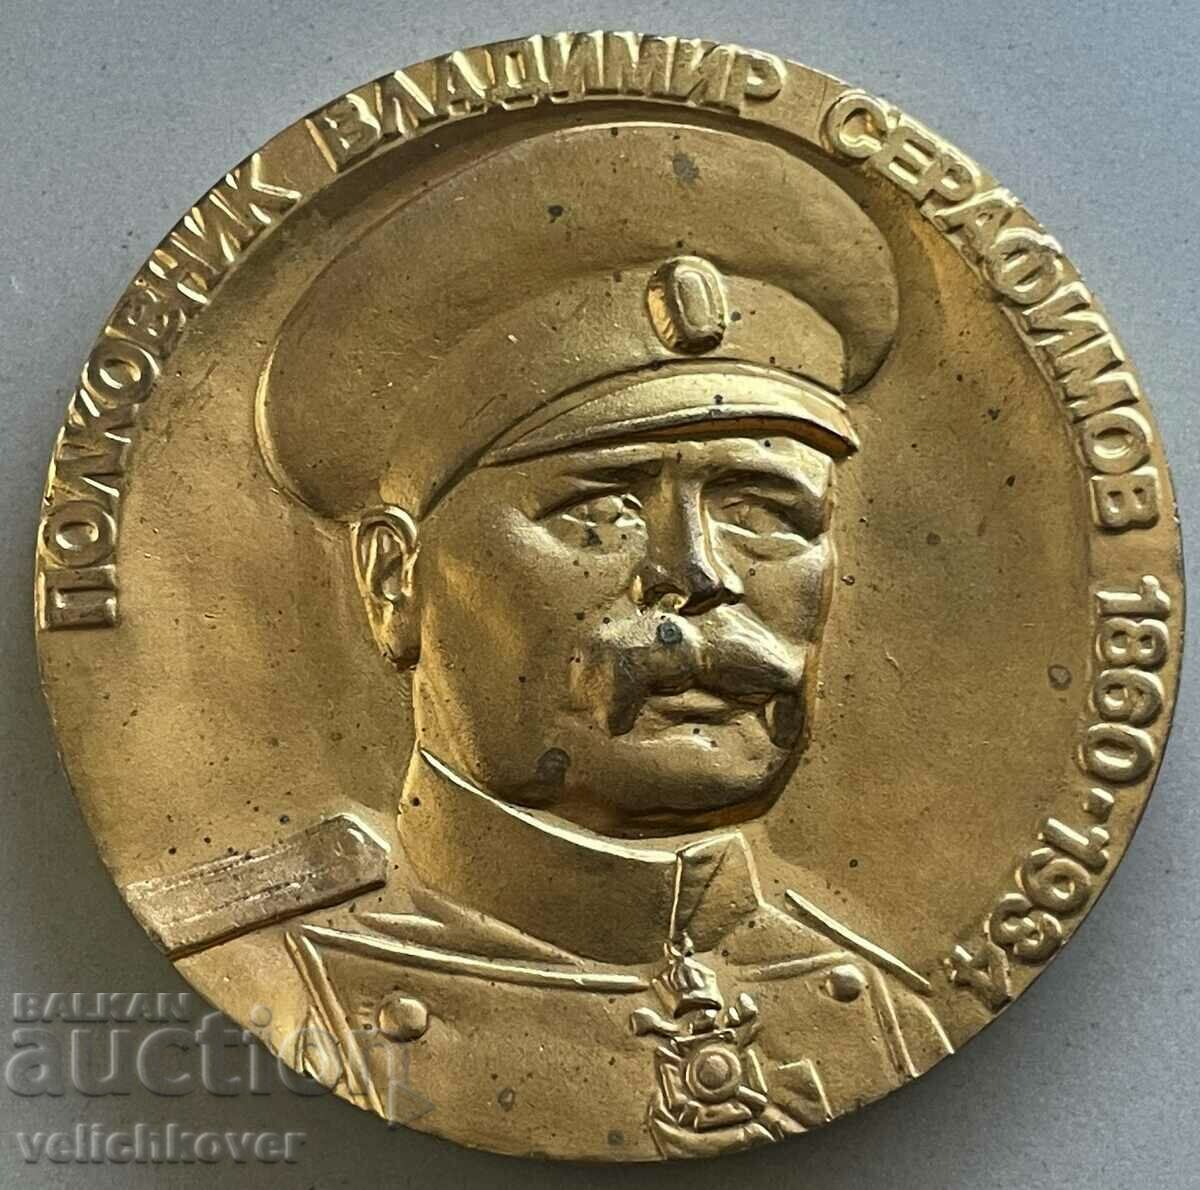 33493 България плакет полковник Владимир Серафимов 1986г.